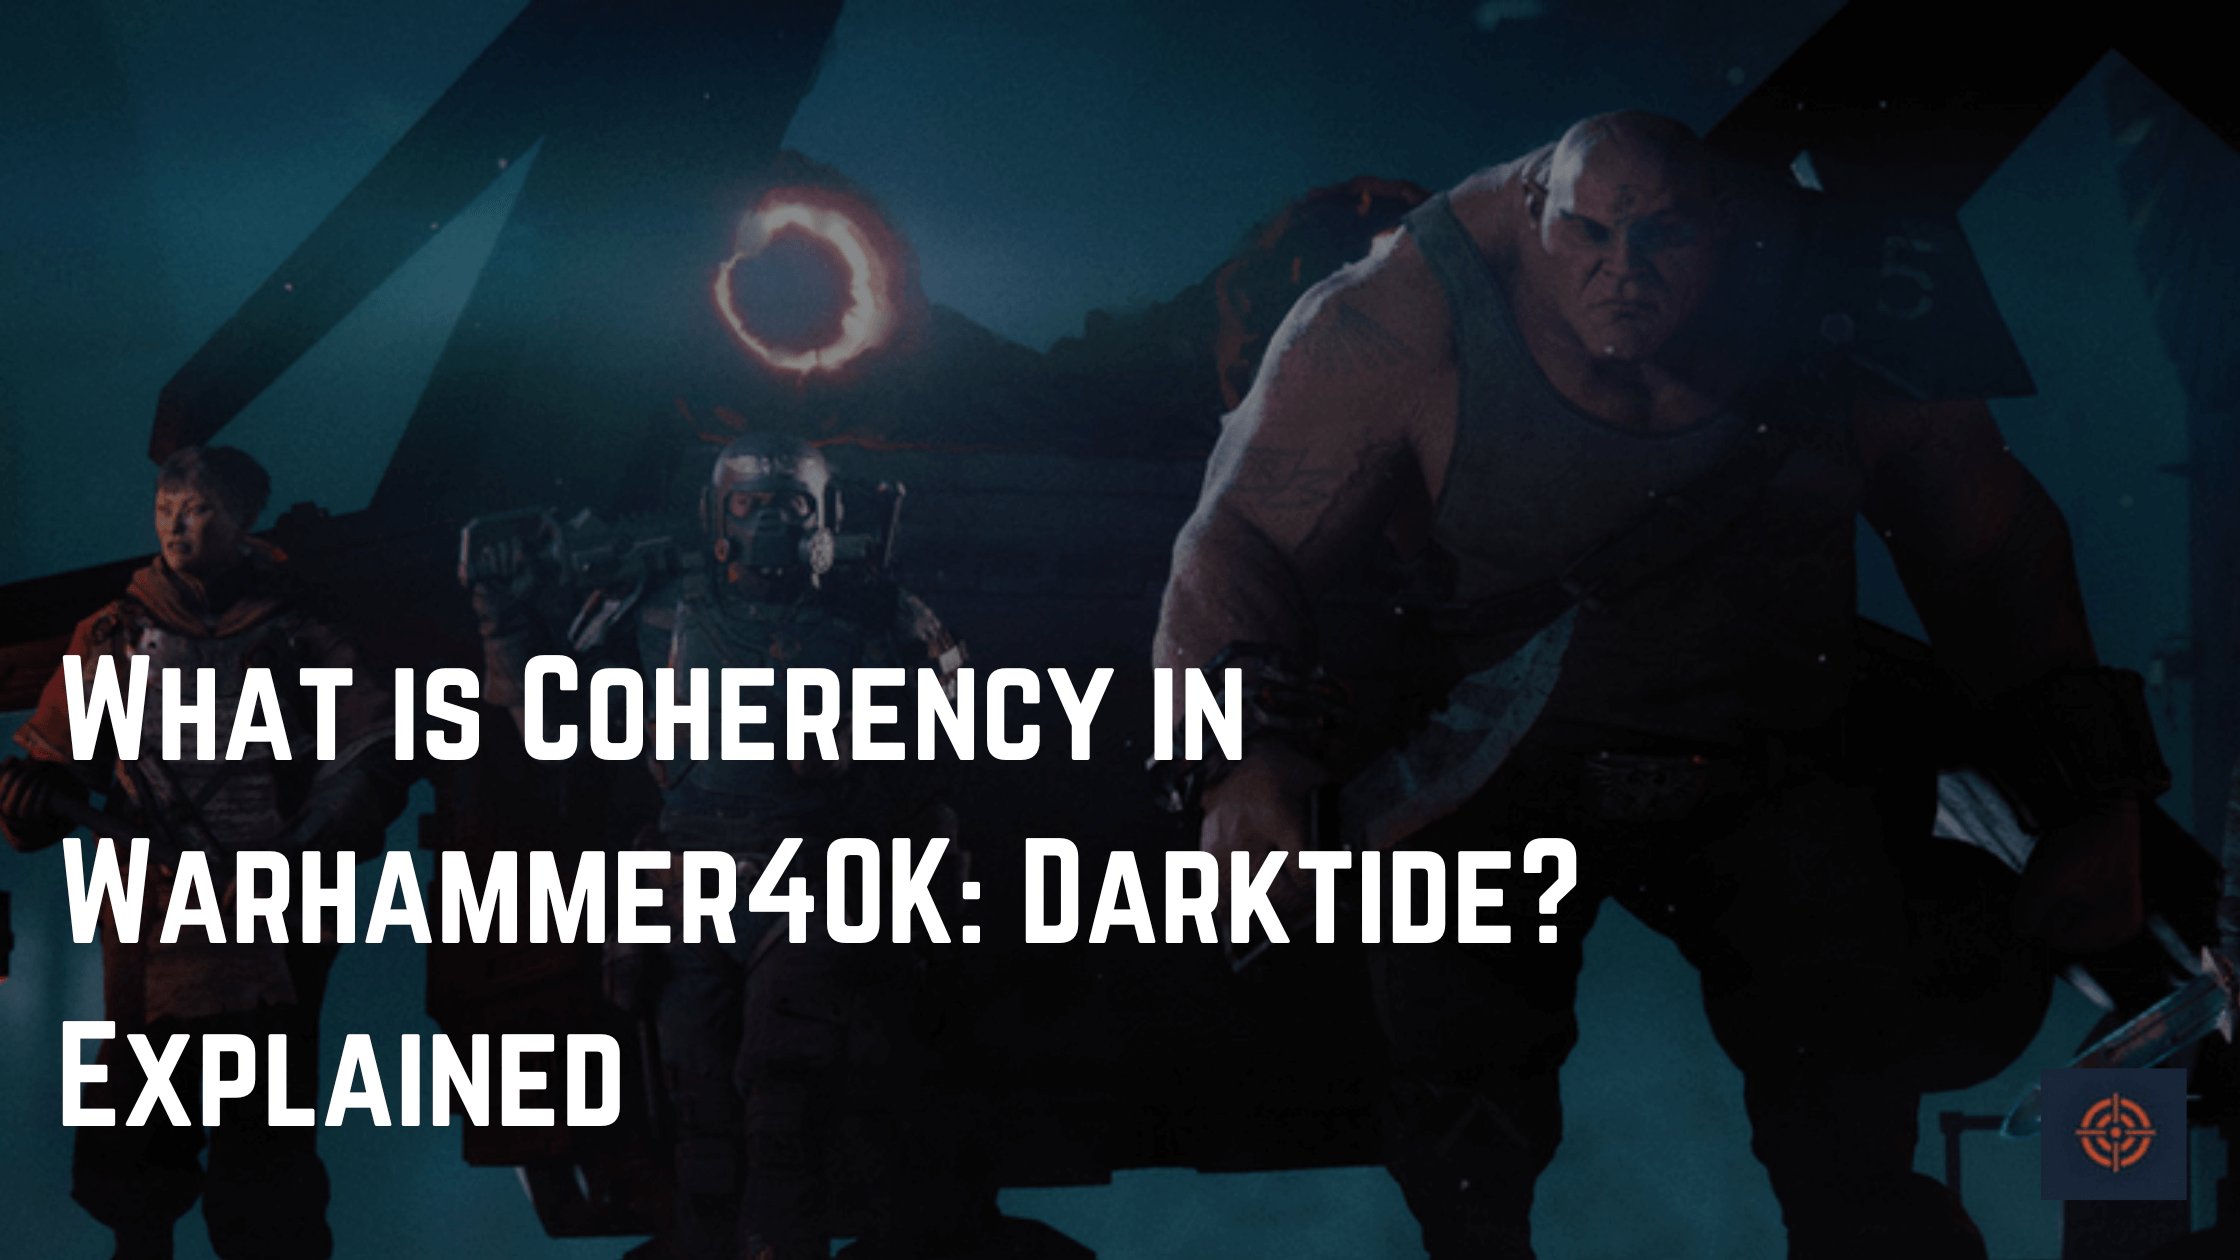 What is Coherency in Warhammer40K: Darktide